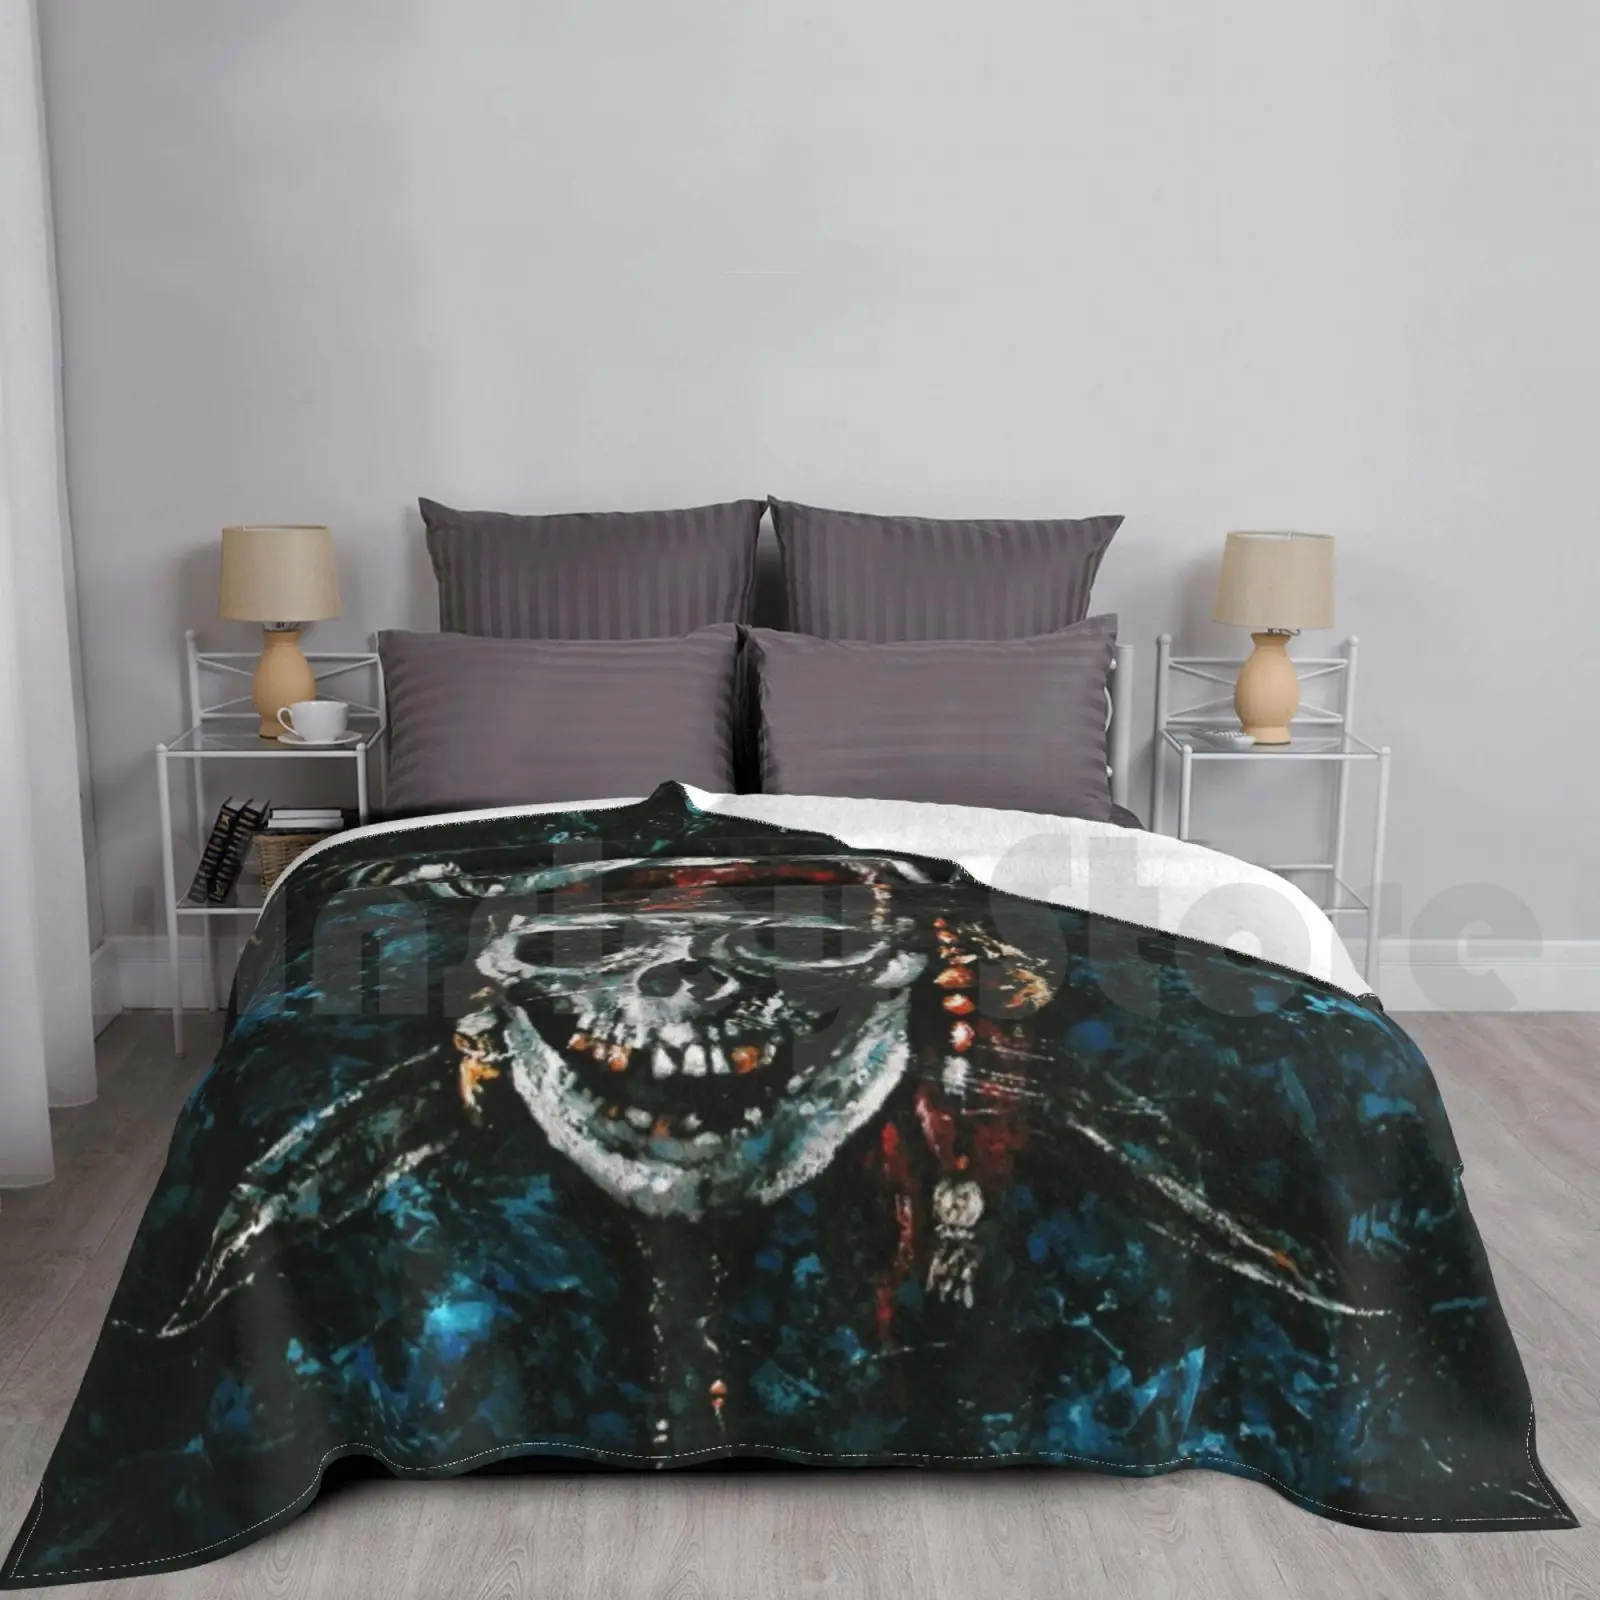 

Пиратское одеяло Jolly Roger для дивана-кровати, путешествия, Пиратская фотография Карибского моря, разъем Sparrow